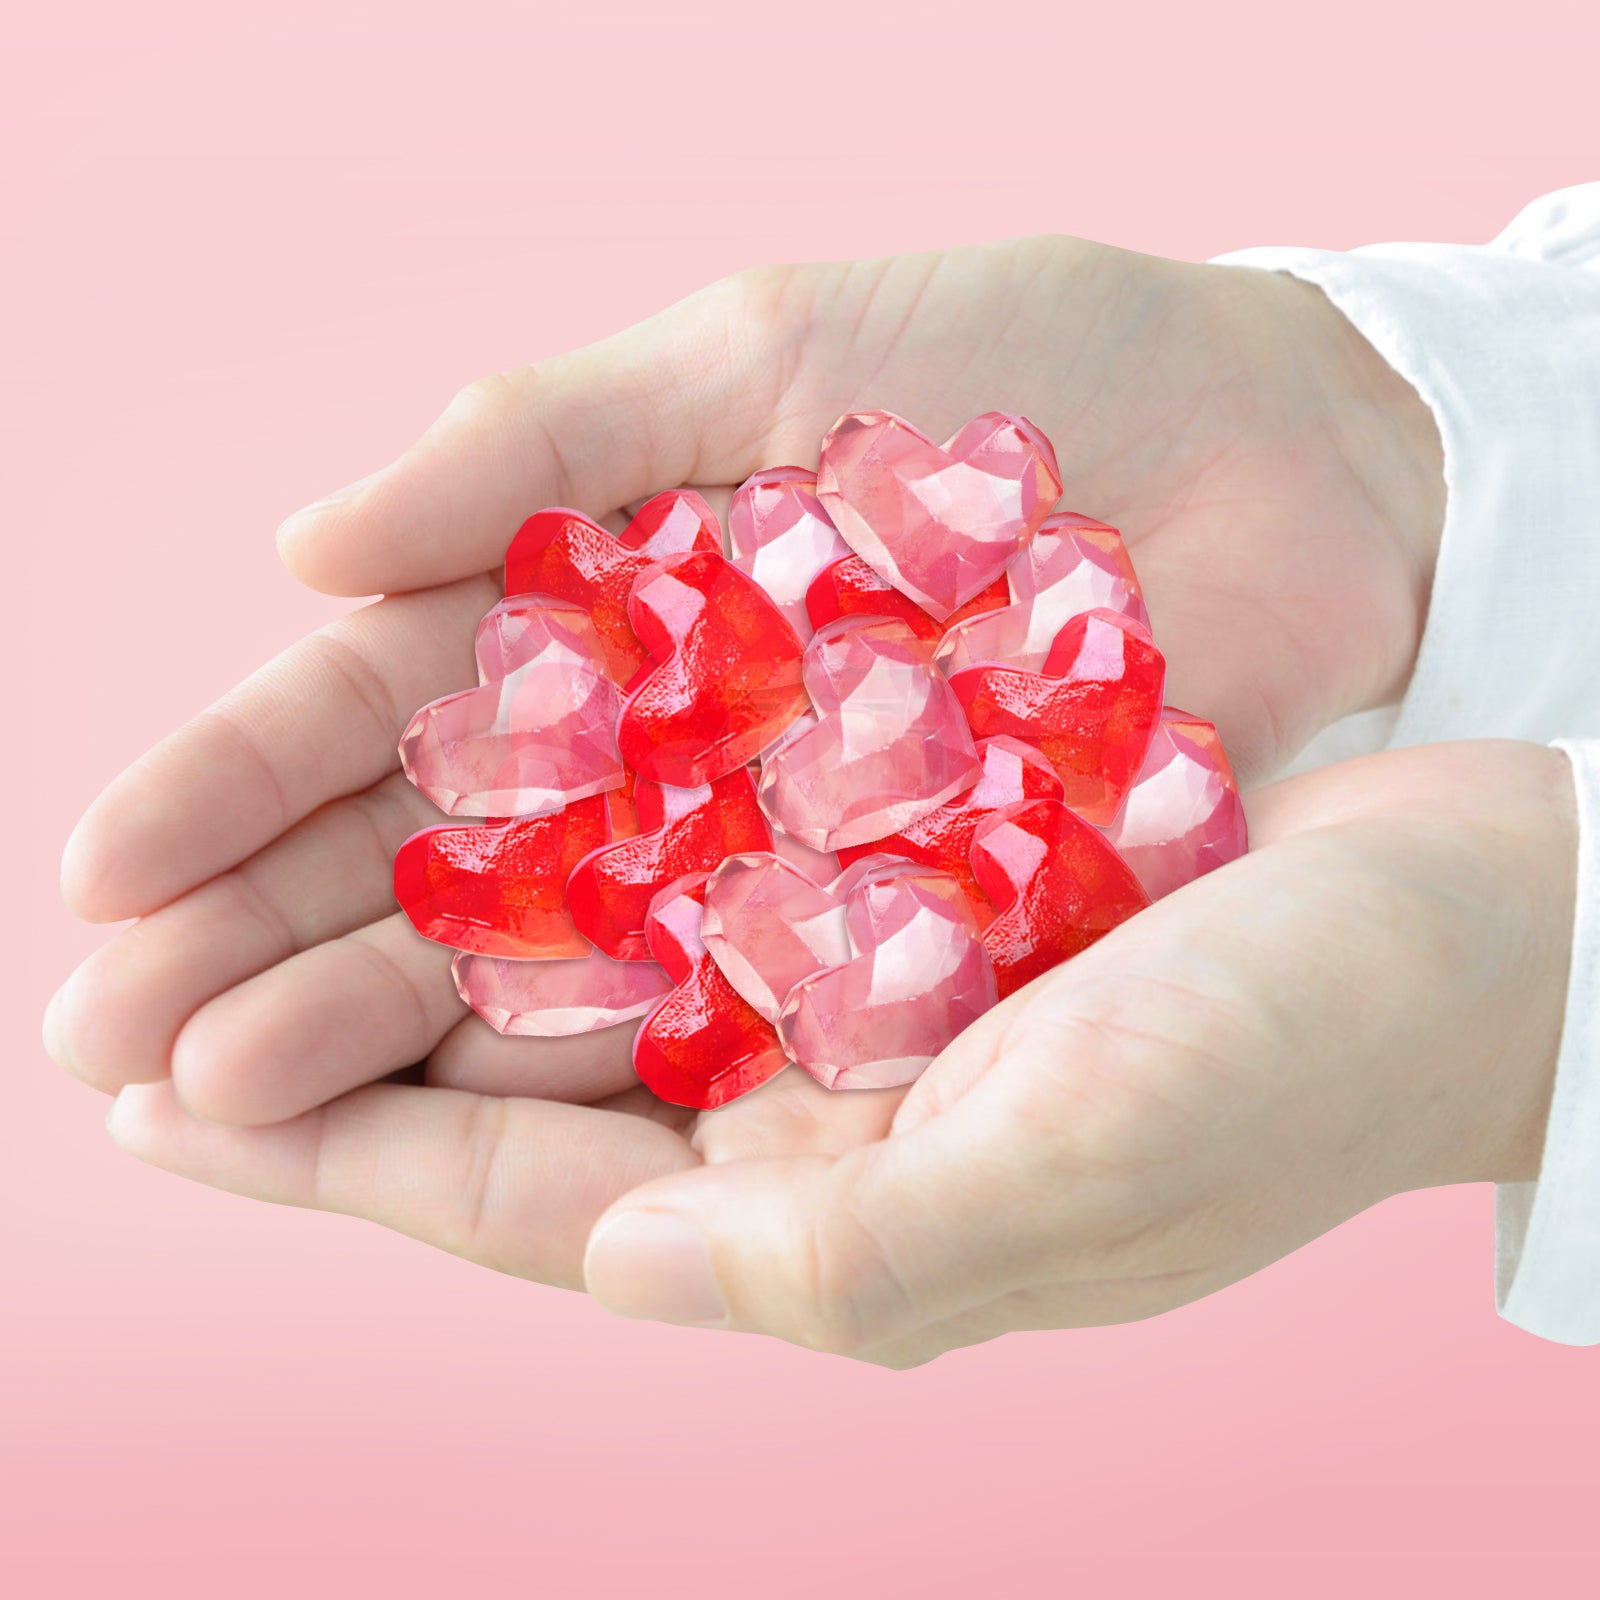 Valentine's Candy - 4D Diomond Hearts Gummy